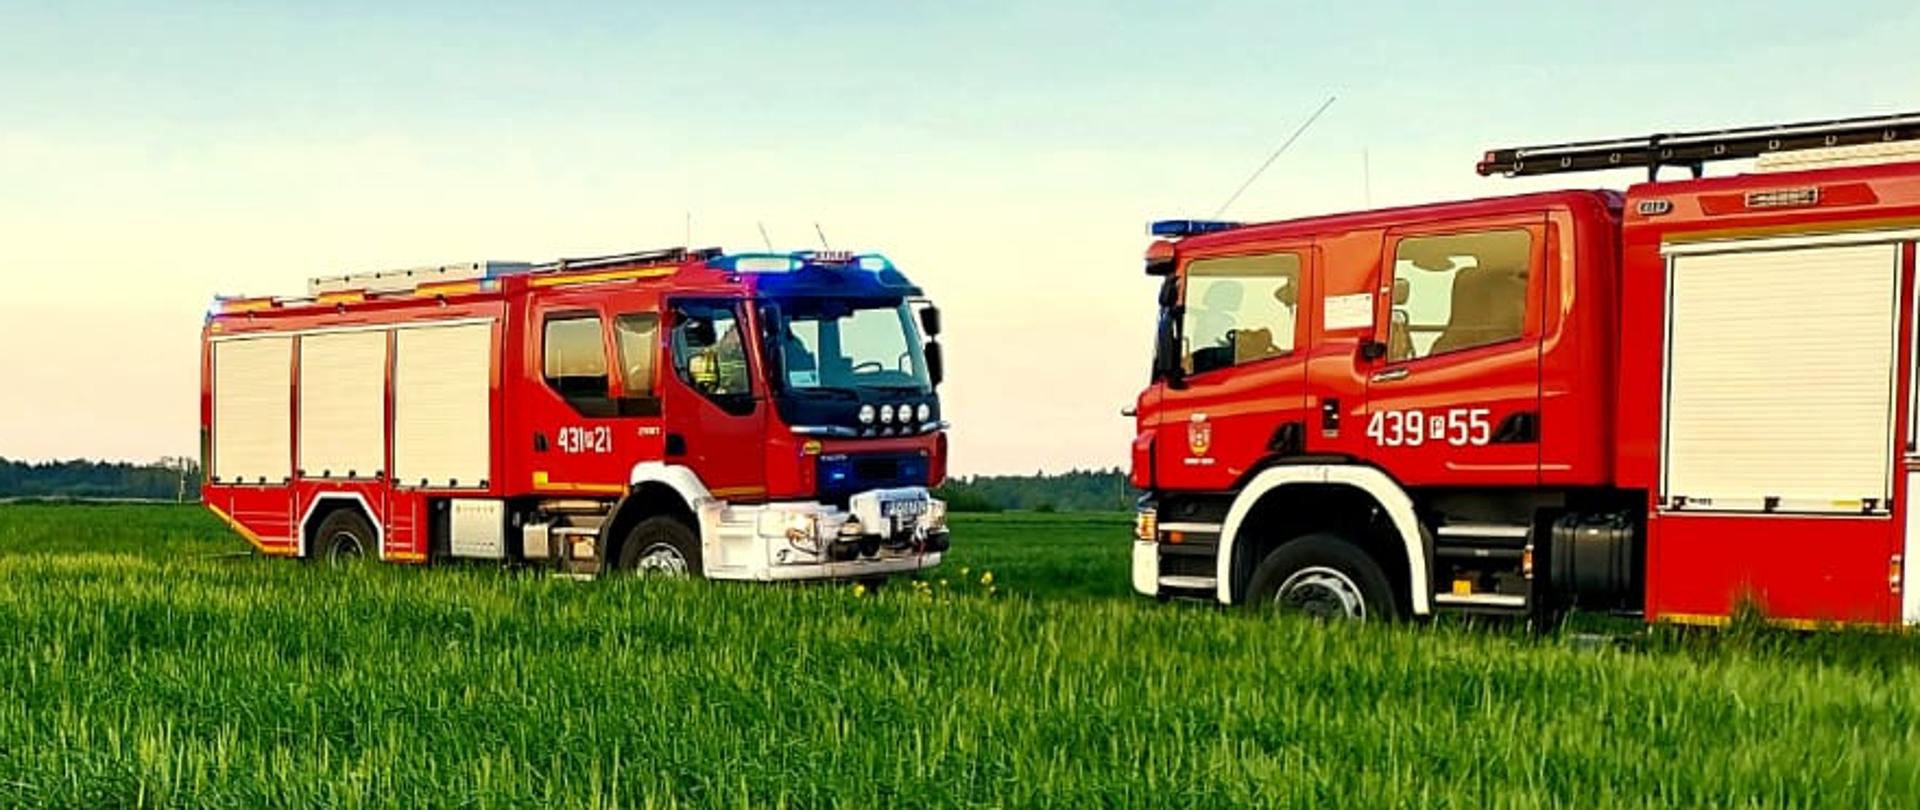 Zdjęcie przedstawia dwa wozy strażackie oraz samochód osobowy. Samochód znajduje się poza jezdnią w polu.